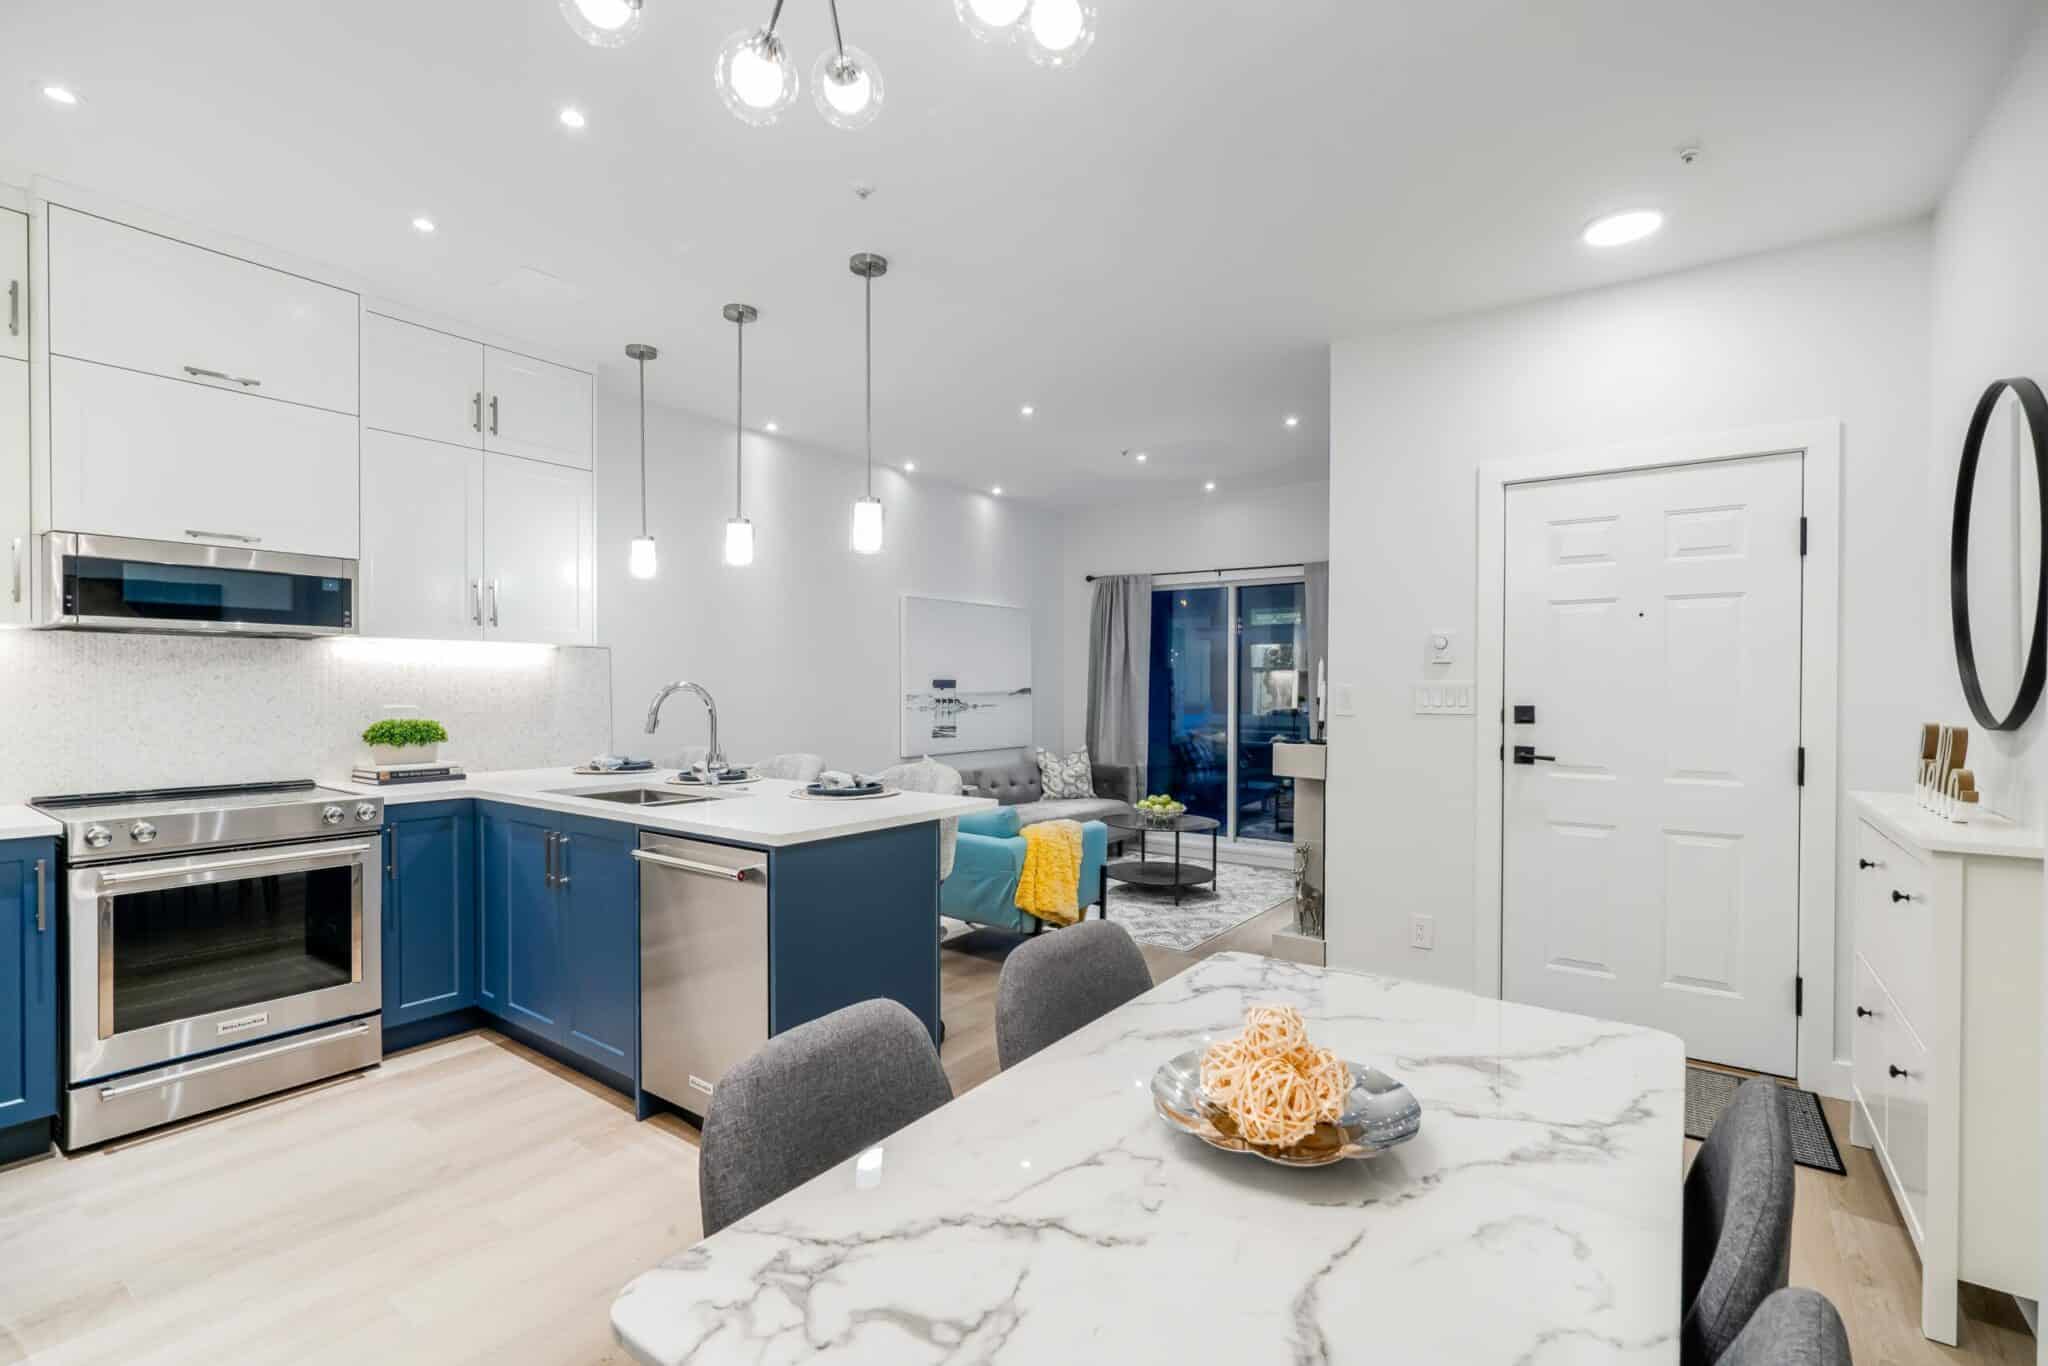 kitchen-dining-room-living-navy-white-modern-stainless-steel-light-wood-flooring-renovation